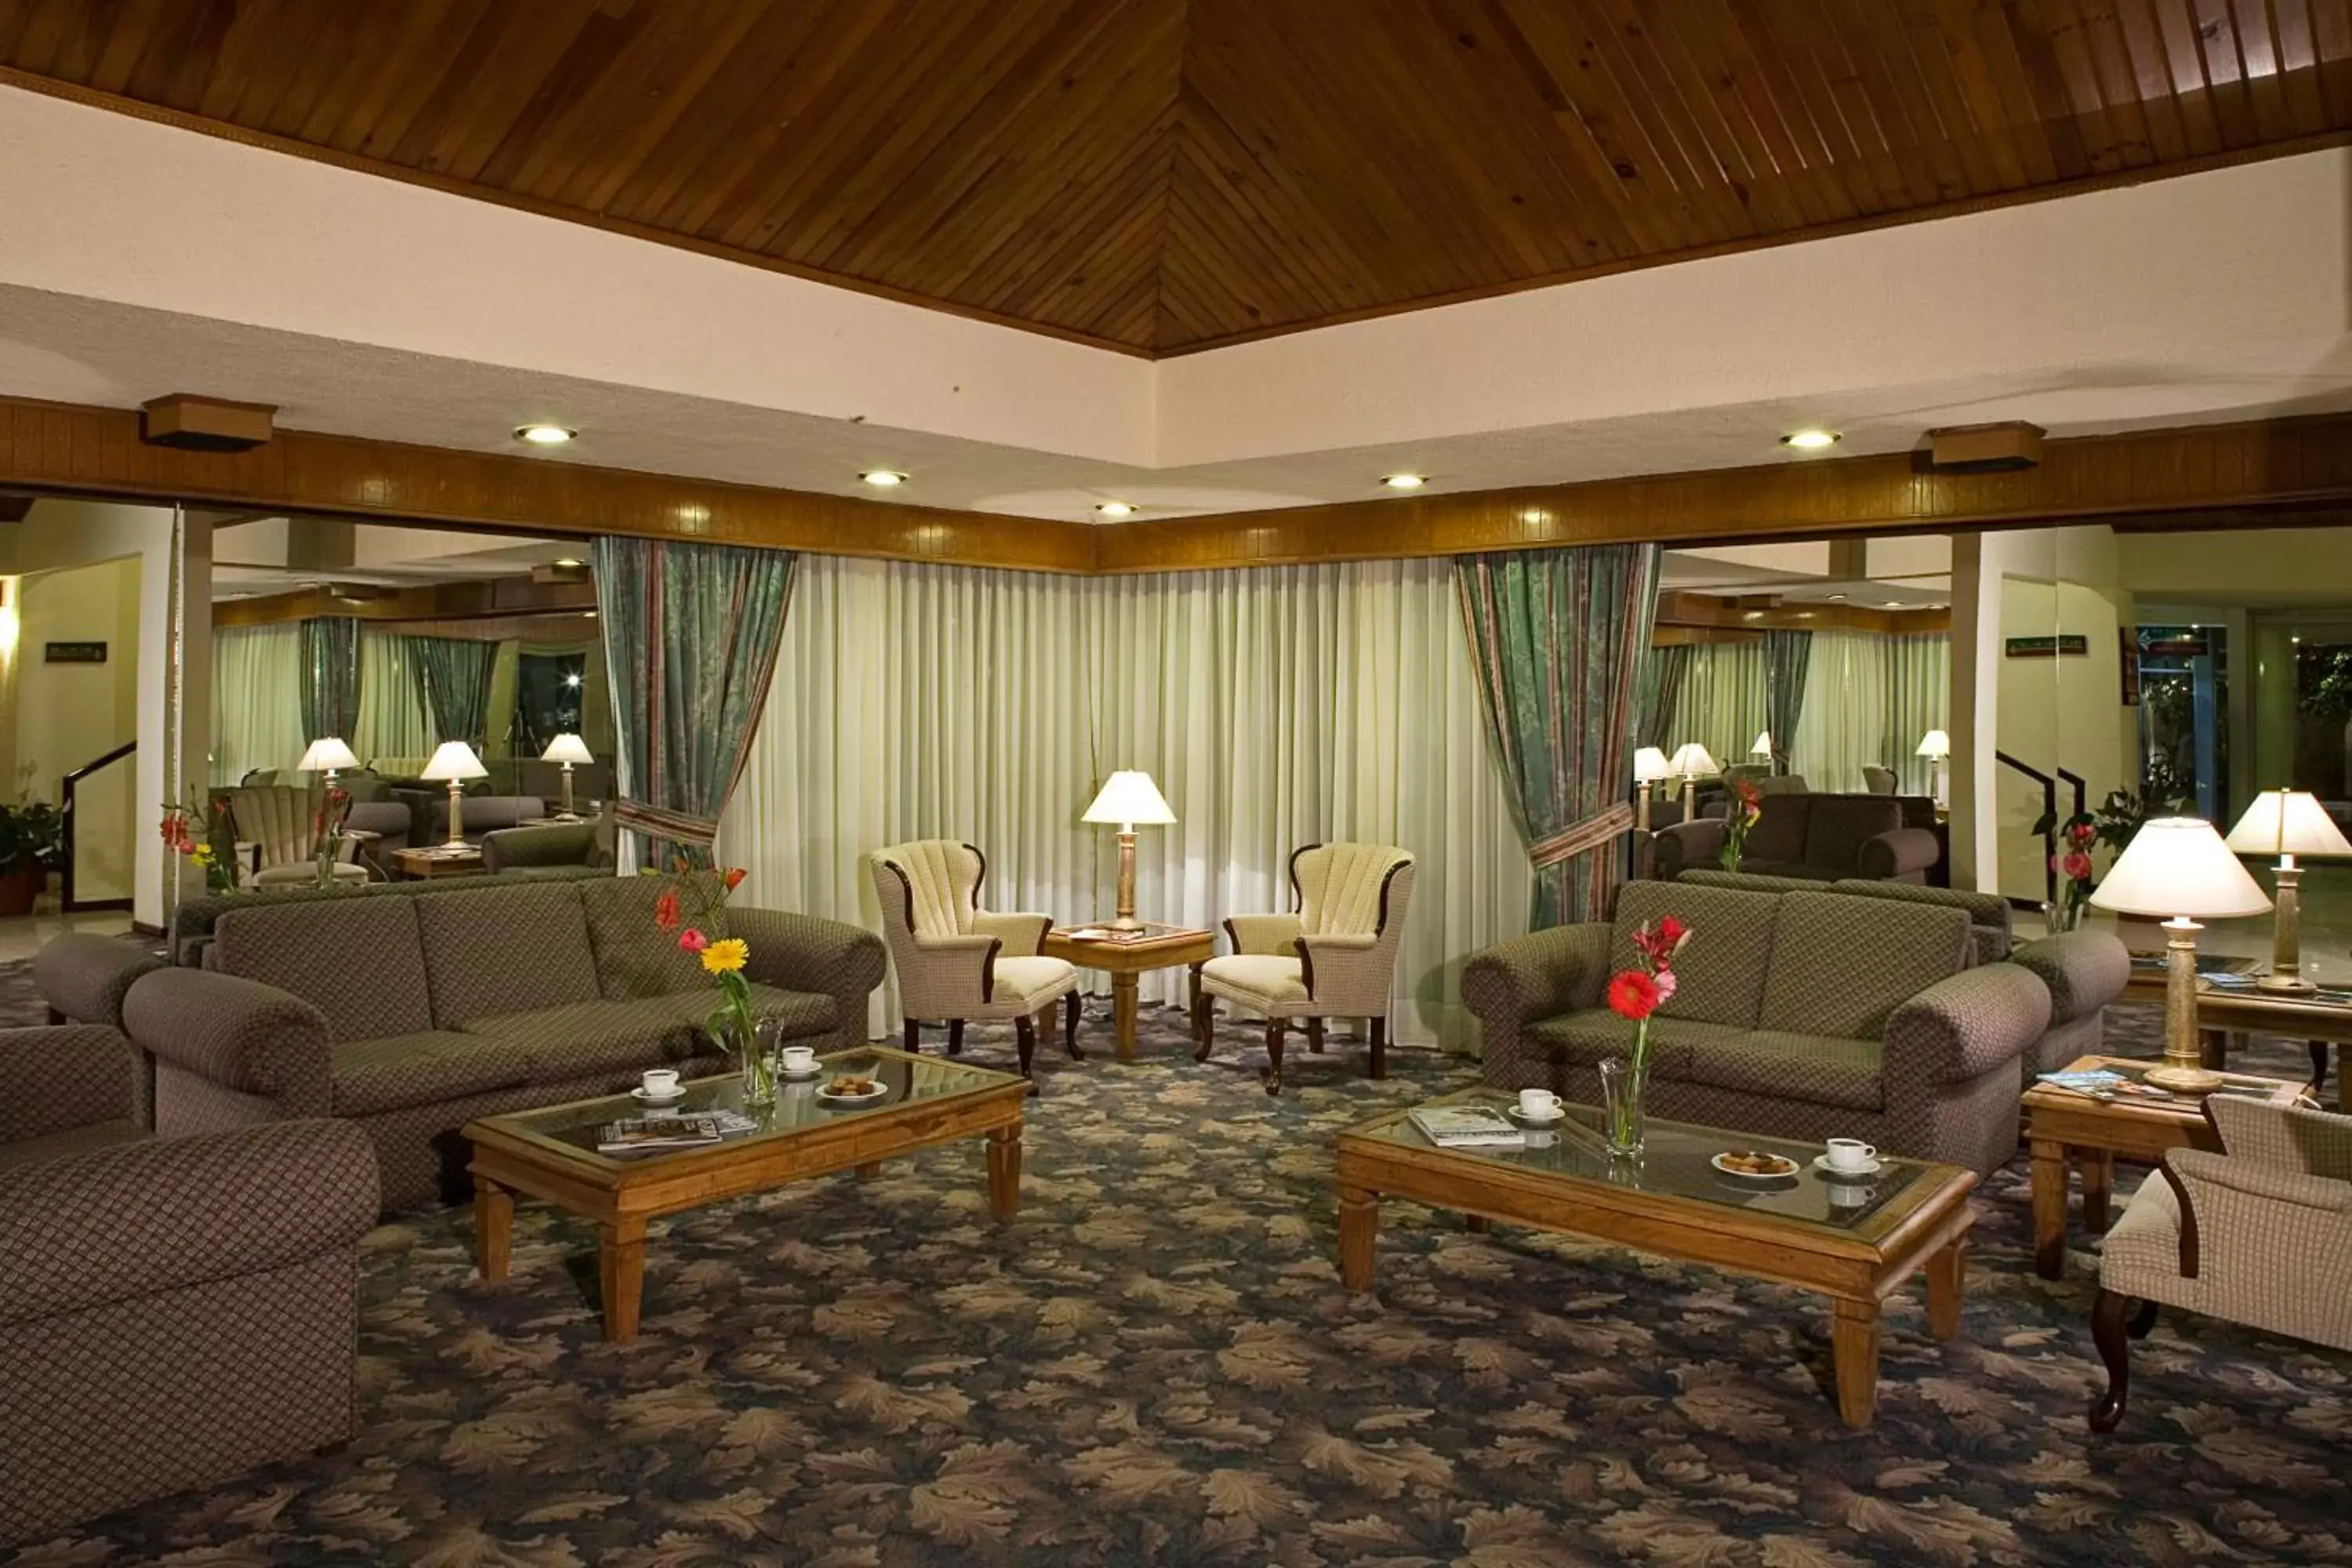 Lobby or reception in Hotel La Joya Tulancingo